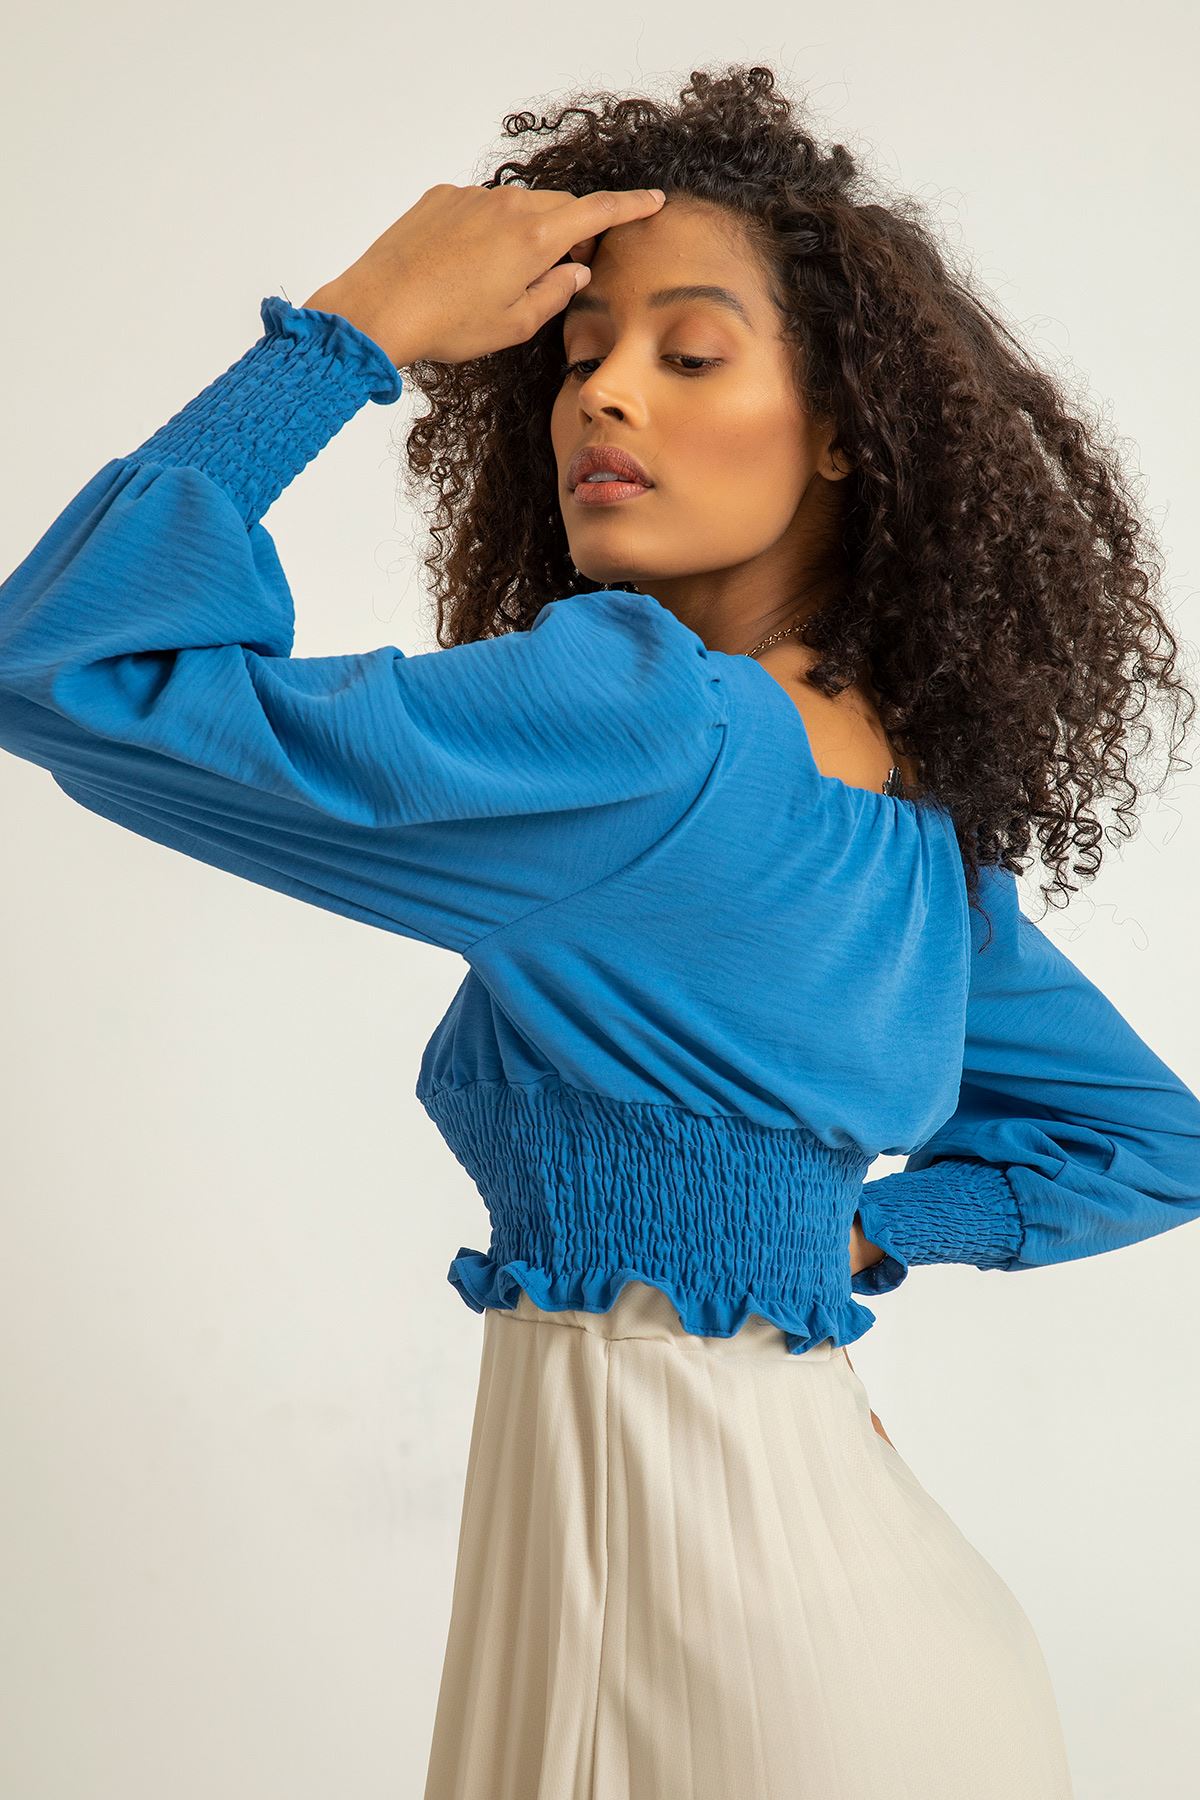 Аэробин Ткань квадратный вырез женская блузка с воланами - Индиго